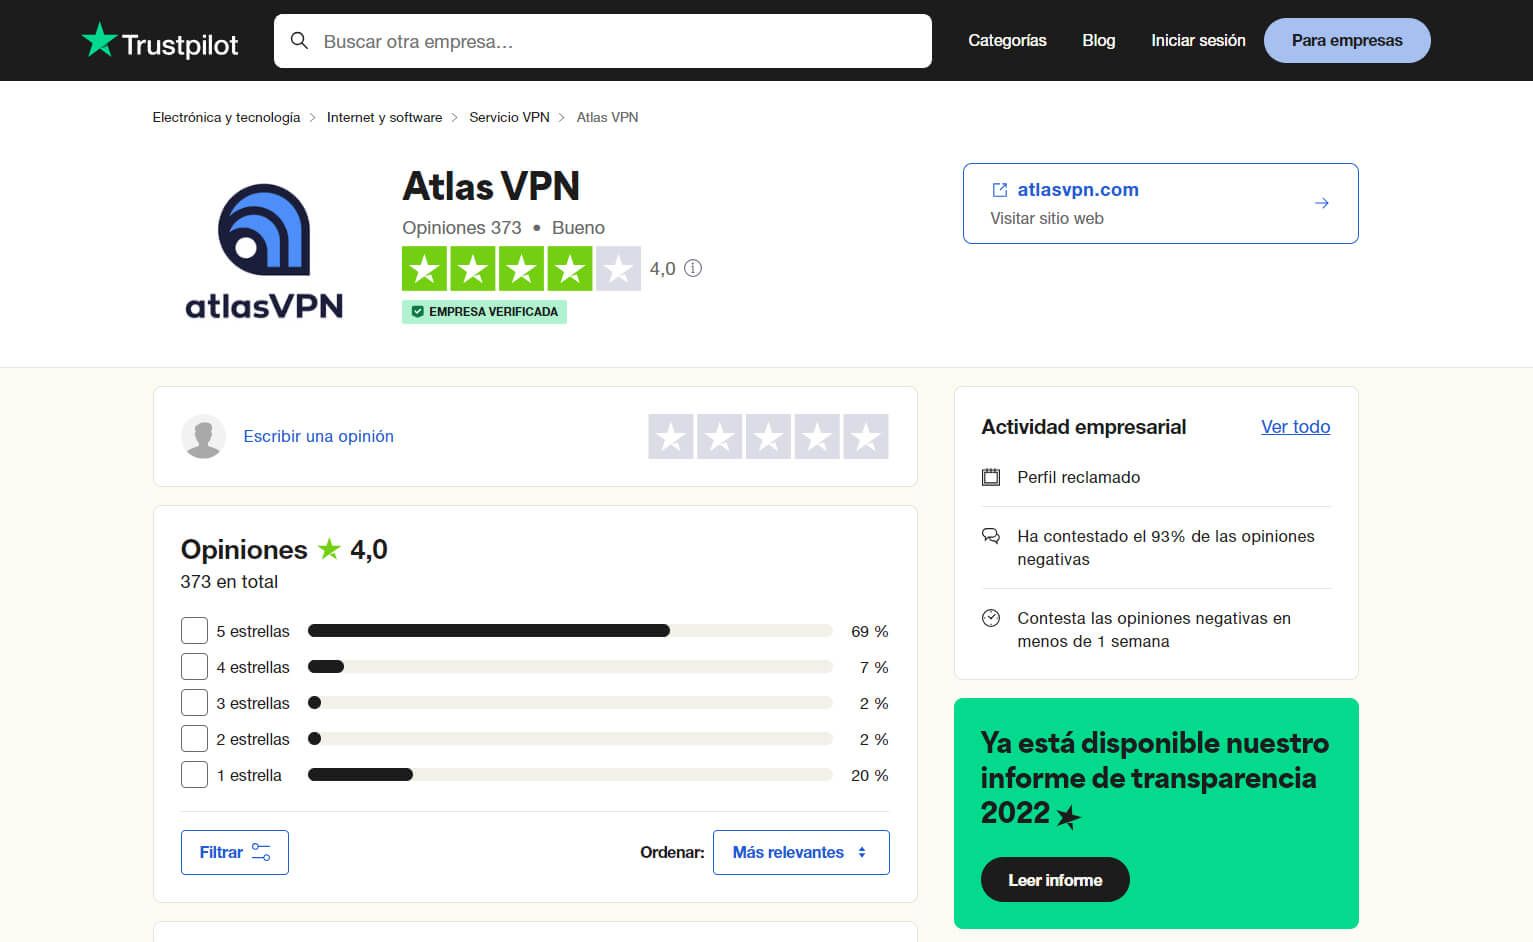 Atlas VPN Opiniones Trustpilot